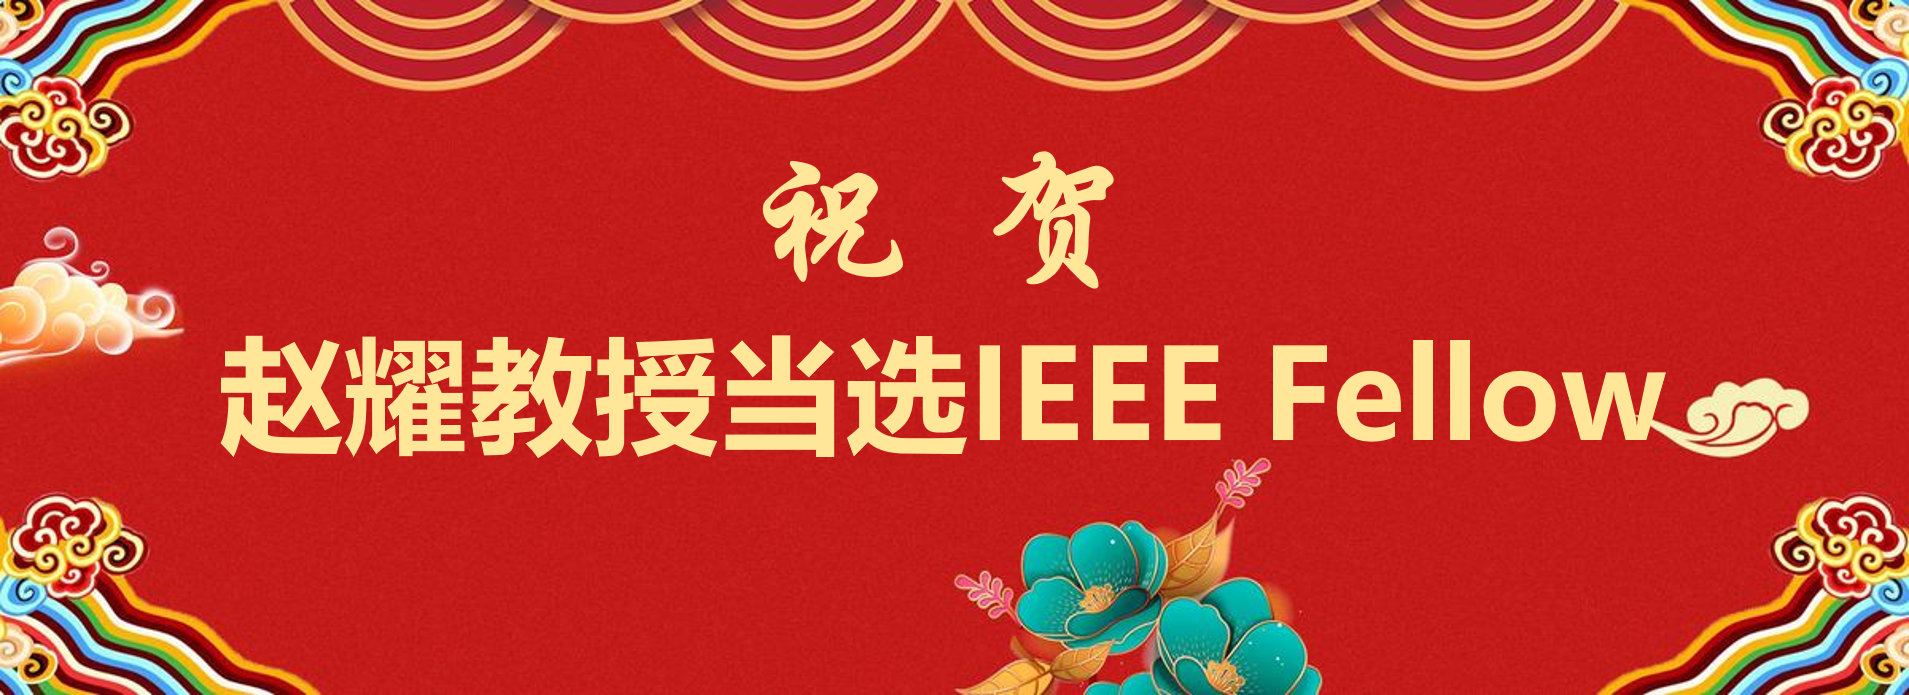 赵耀教授当选IEEE Fellow